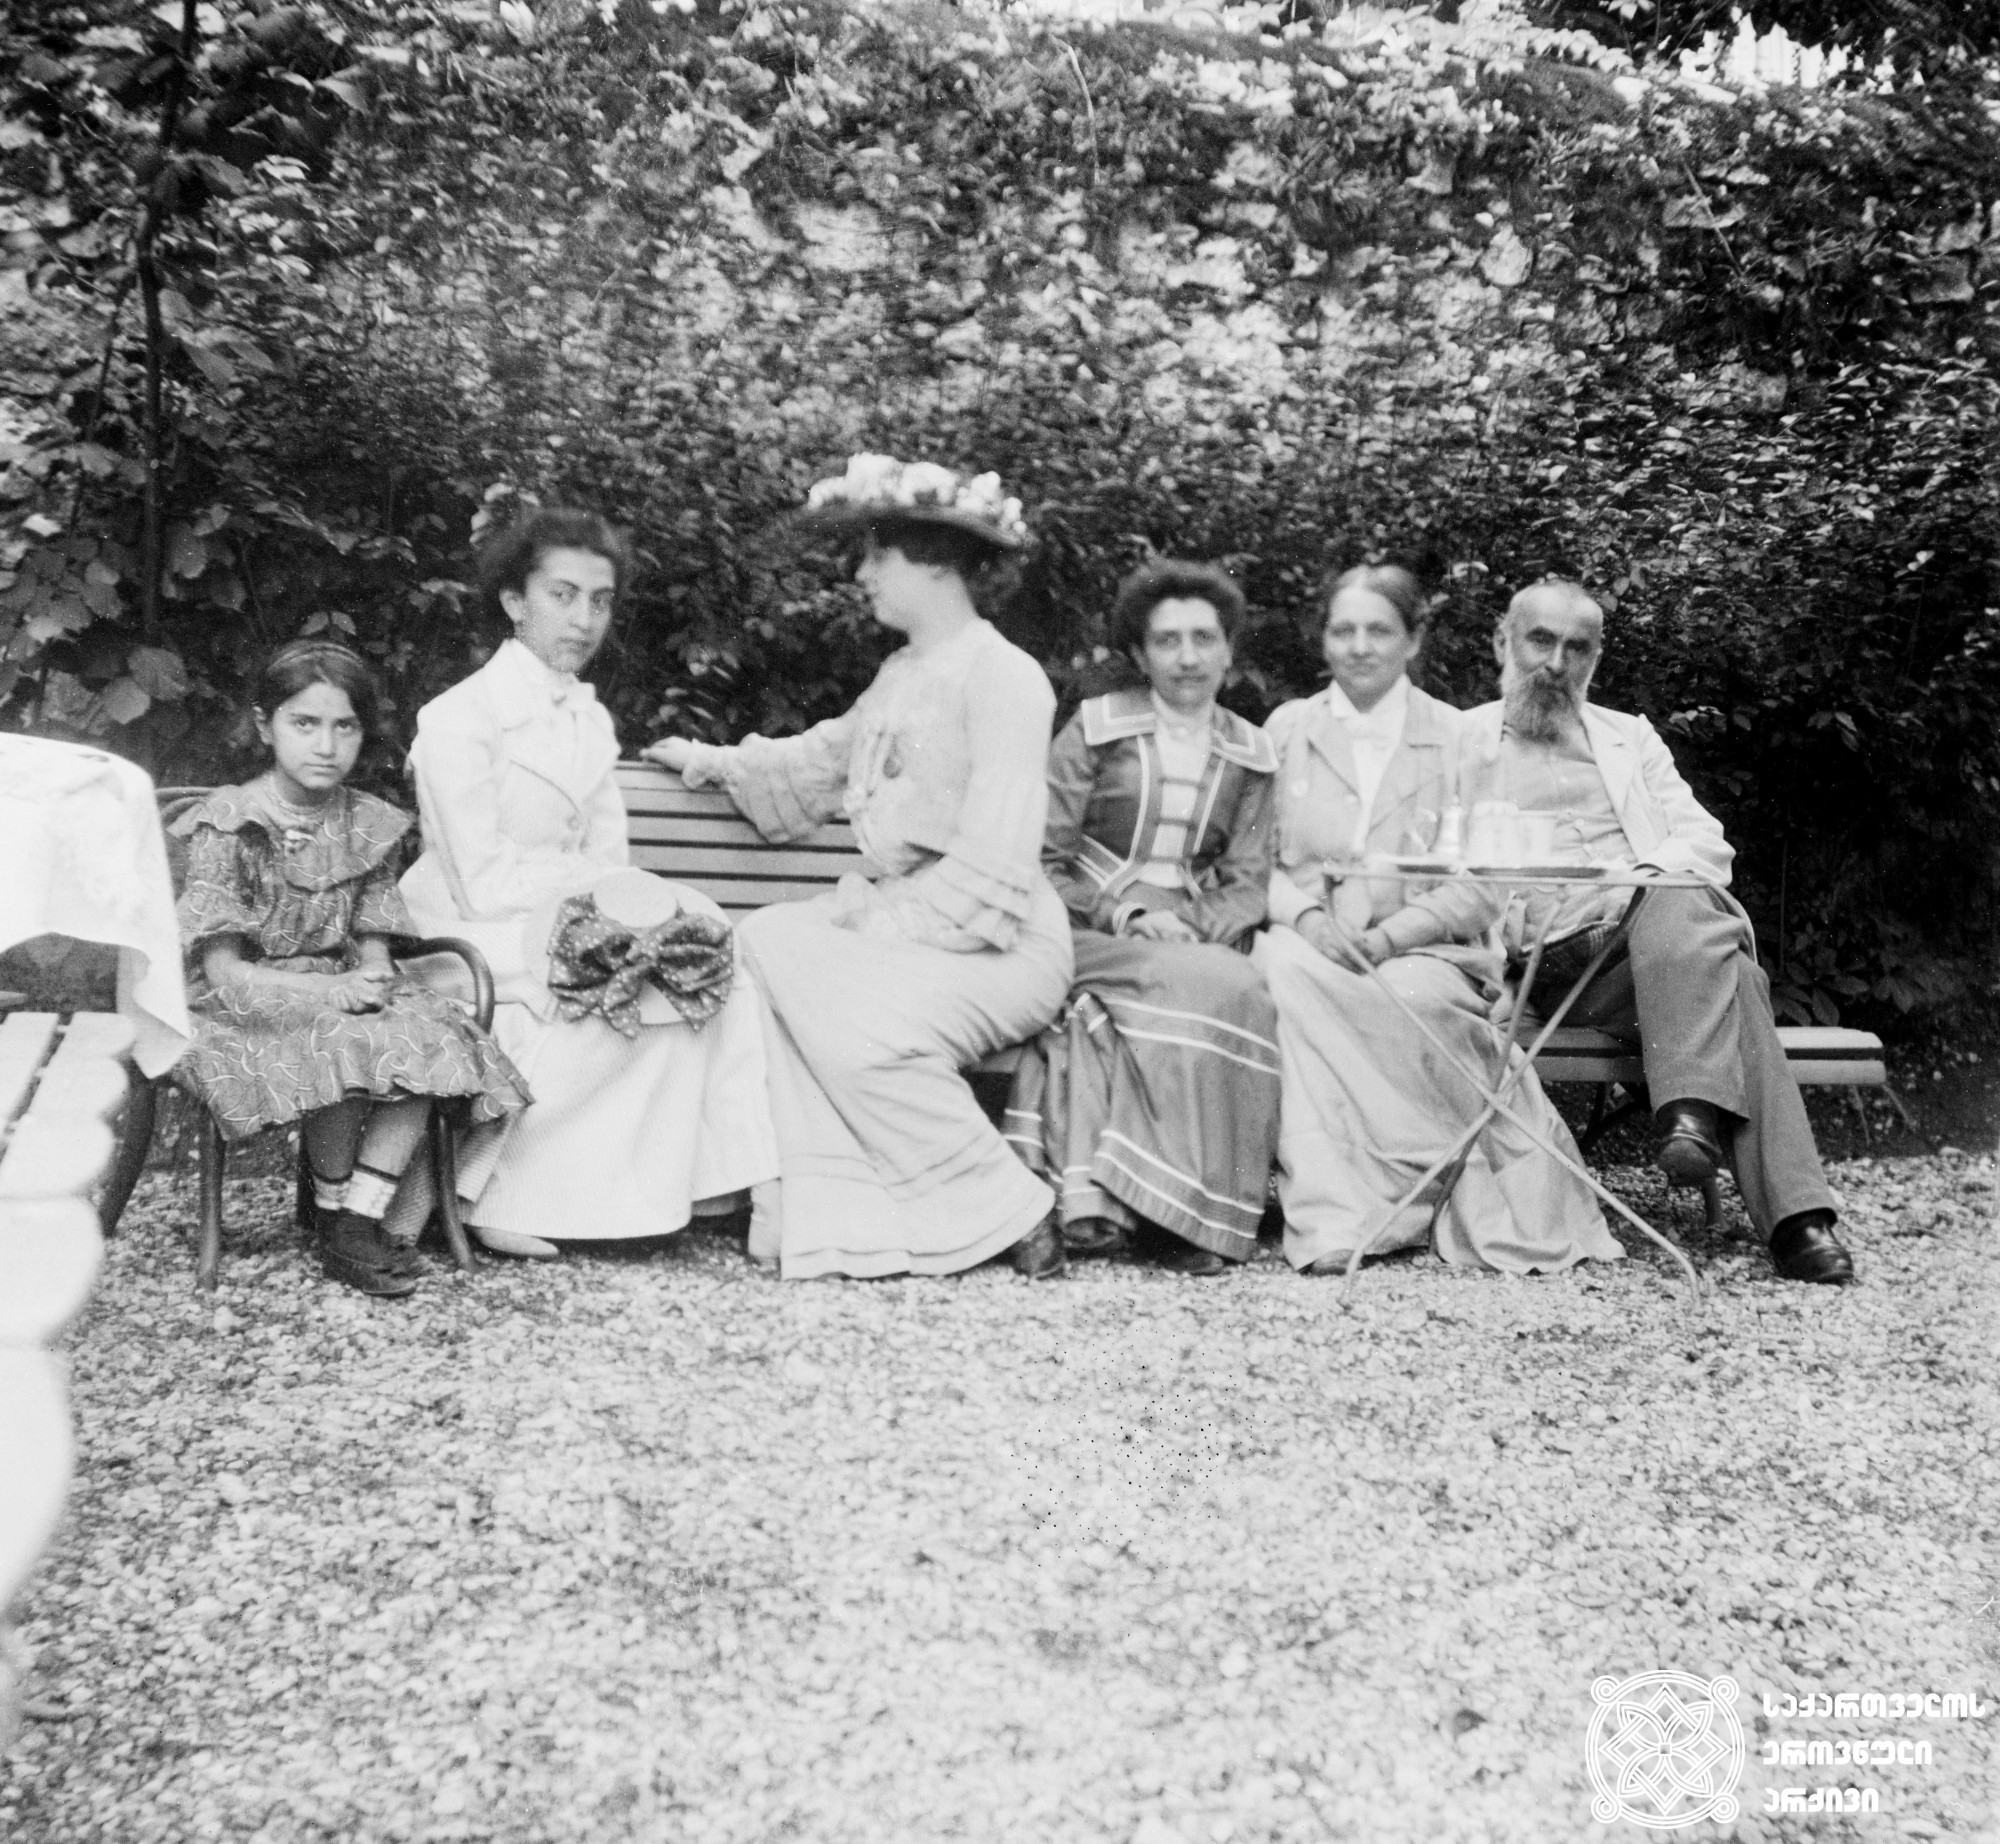 ნიკო ნიკოლაძის ოჯახი სტუმრად ლევ მეჩნიკოვის ოჯახის ბაღში. ერქსლებენი, გერმანია. <br>
1902 წელი. <br> 
ლევ მეჩნიკოვი (1838-1888) - ცნობილი რუსი რევოლუციონერ-ანარქისტი, პუბლიცისტი და გეოგრაფი, ჯუზეპე გარიბალდის თანამებრძოლი და იტალიის განმათავისუფლებელი მოძრაობის აქტიური წევრი. <br>
ნიკოლაძე-ღამბაშიძის ფოტოკოლექცია.